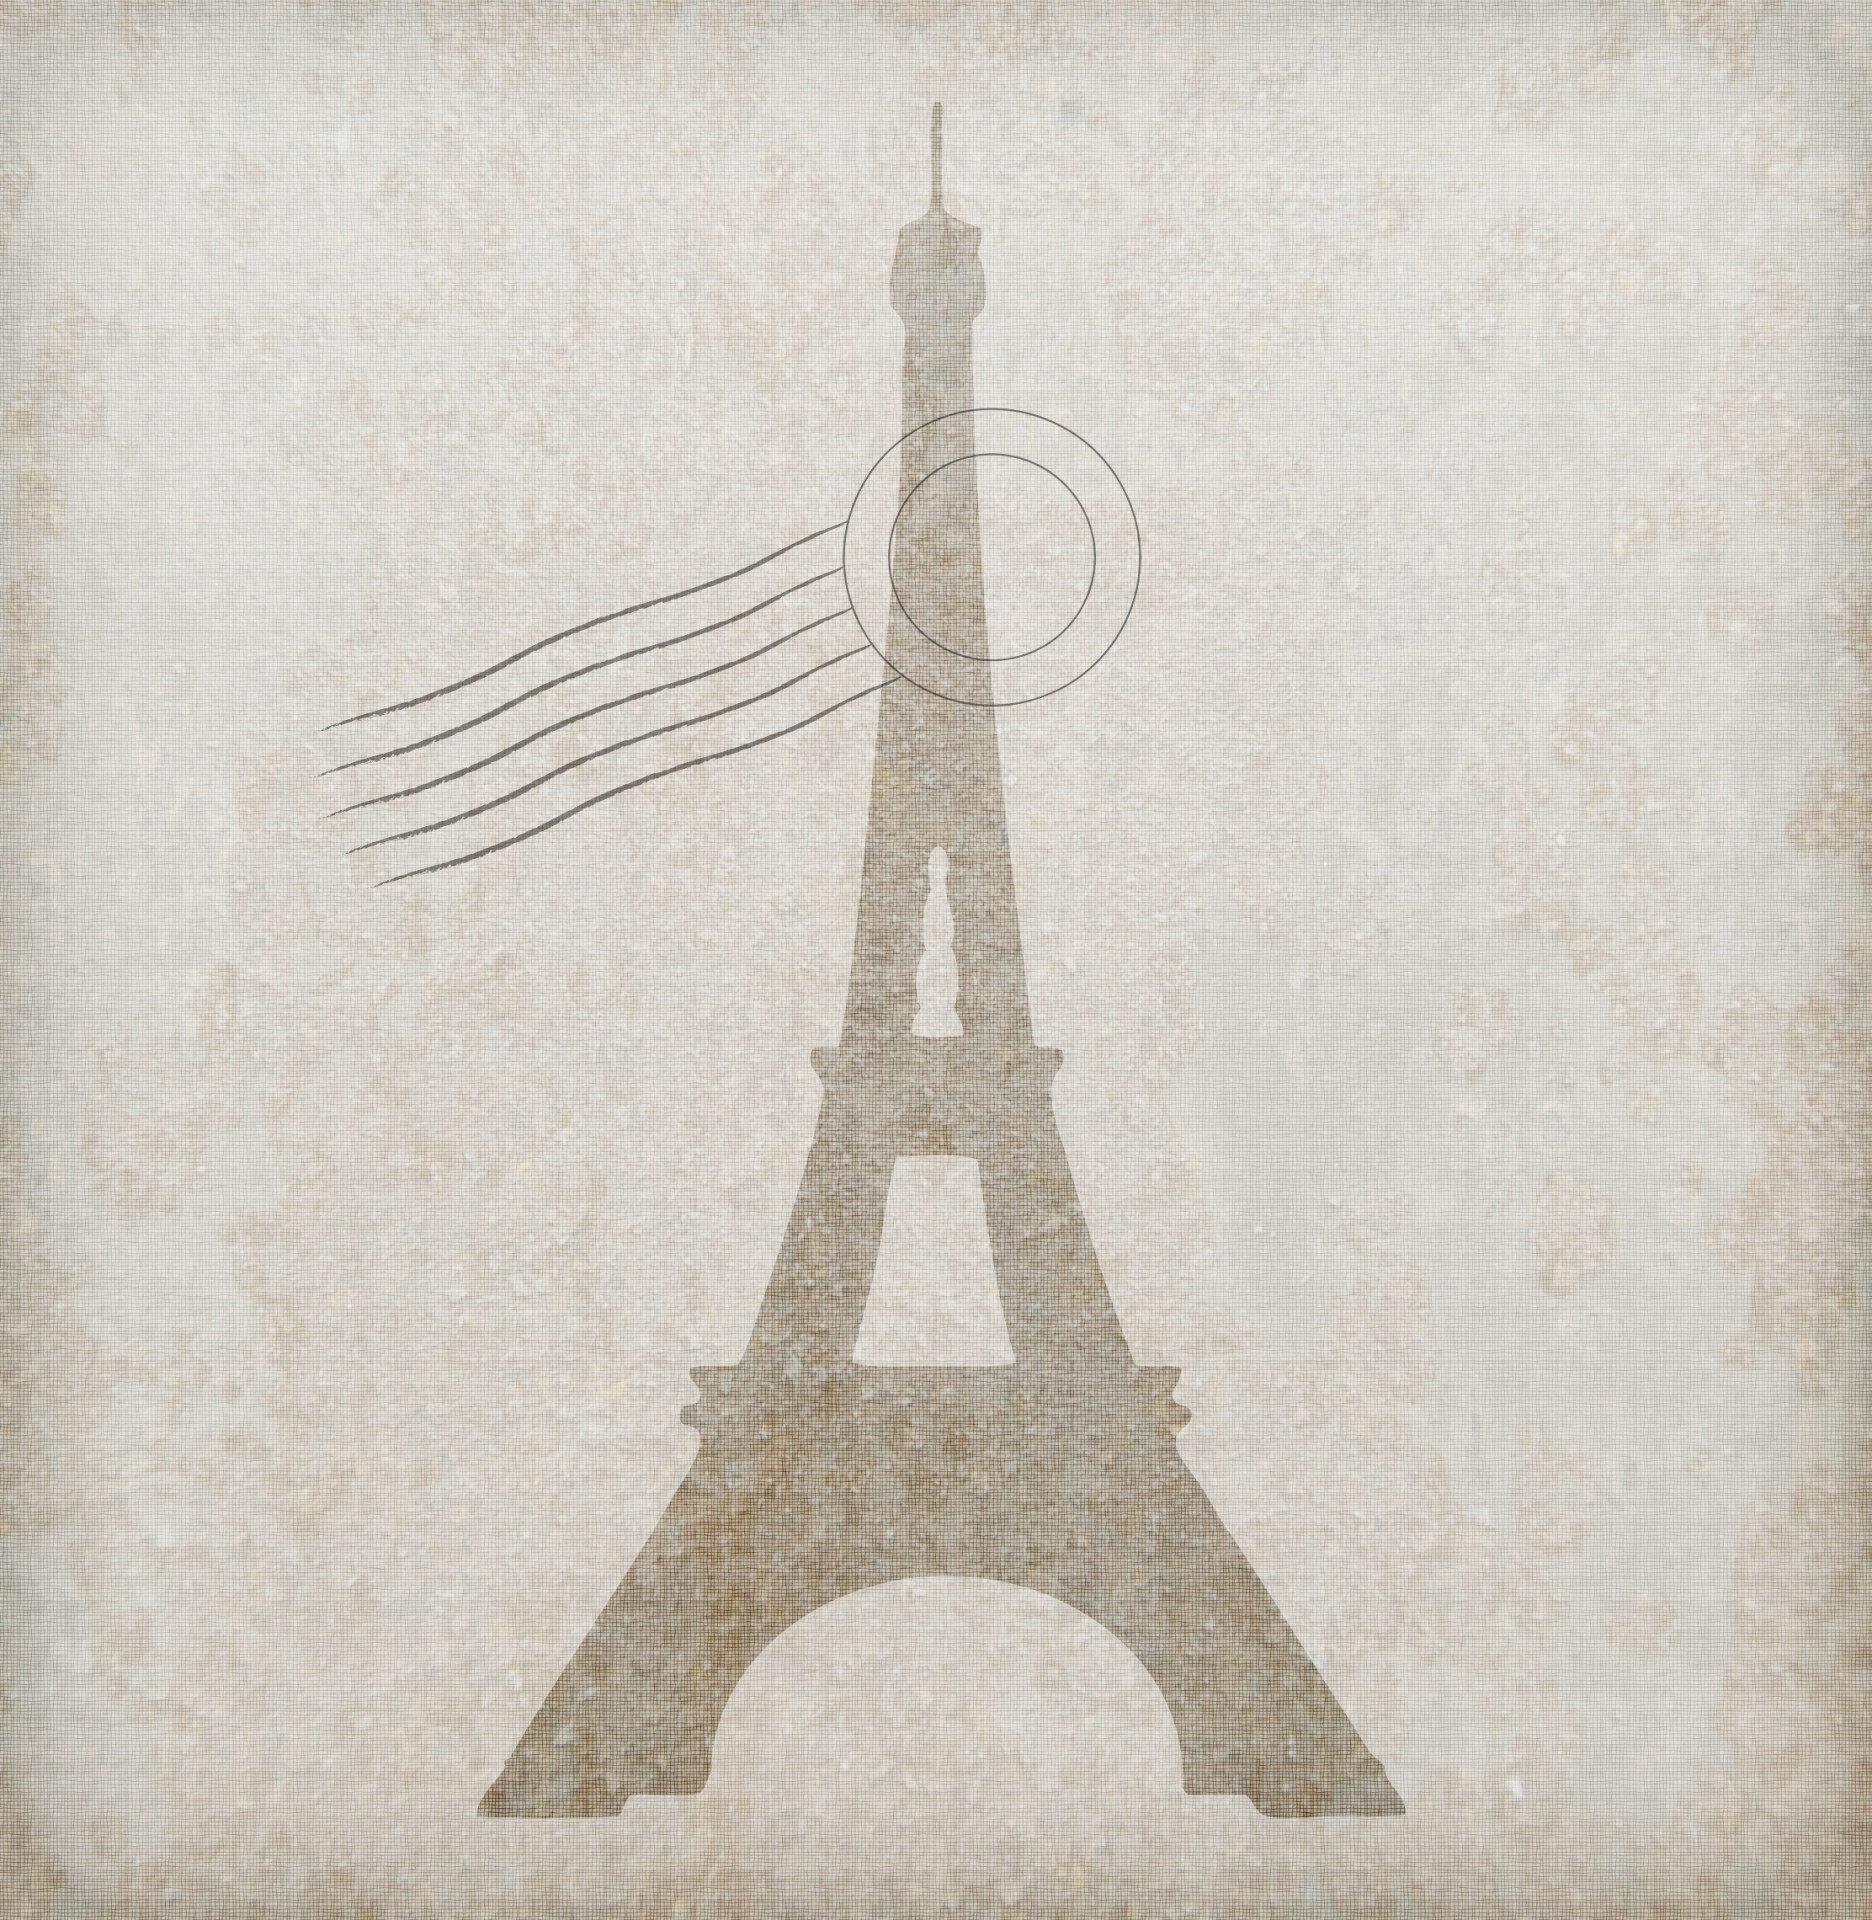 Eiffel Tower Postmark Vintage